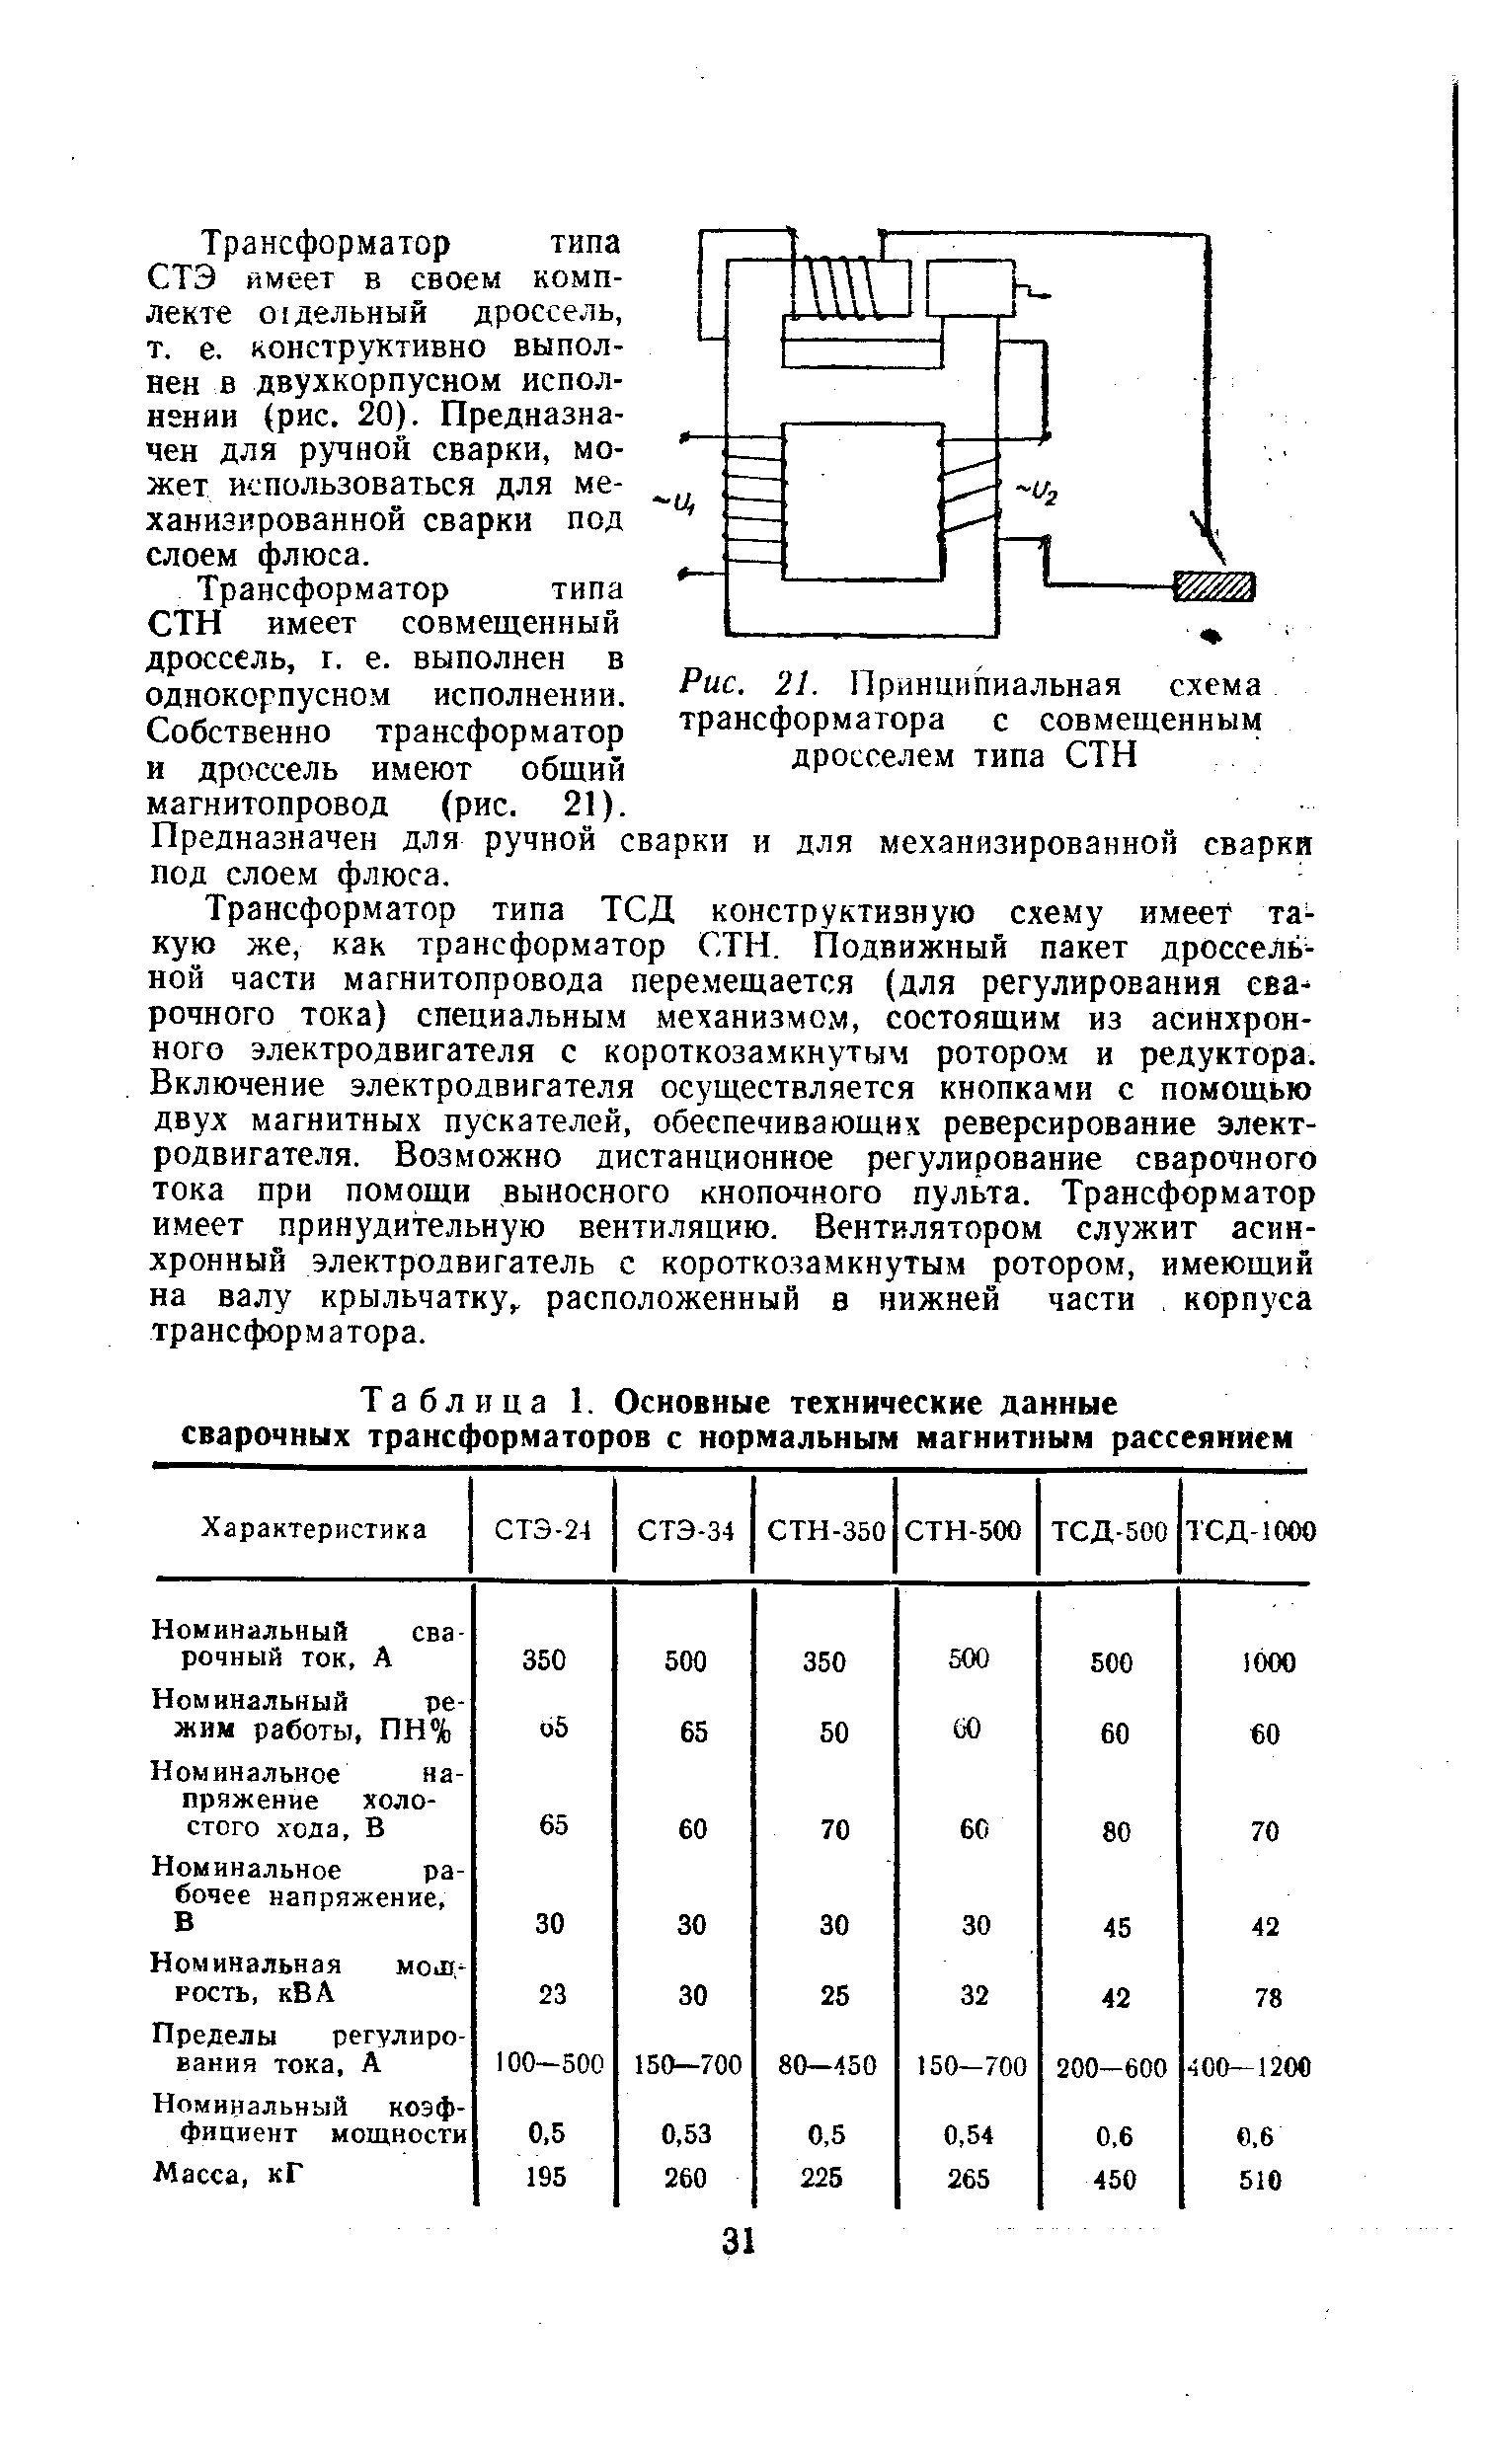 Таблица 1. Основные технические данные <a href="/info/36055">сварочных трансформаторов</a> с нормальным магнитным рассеянием
